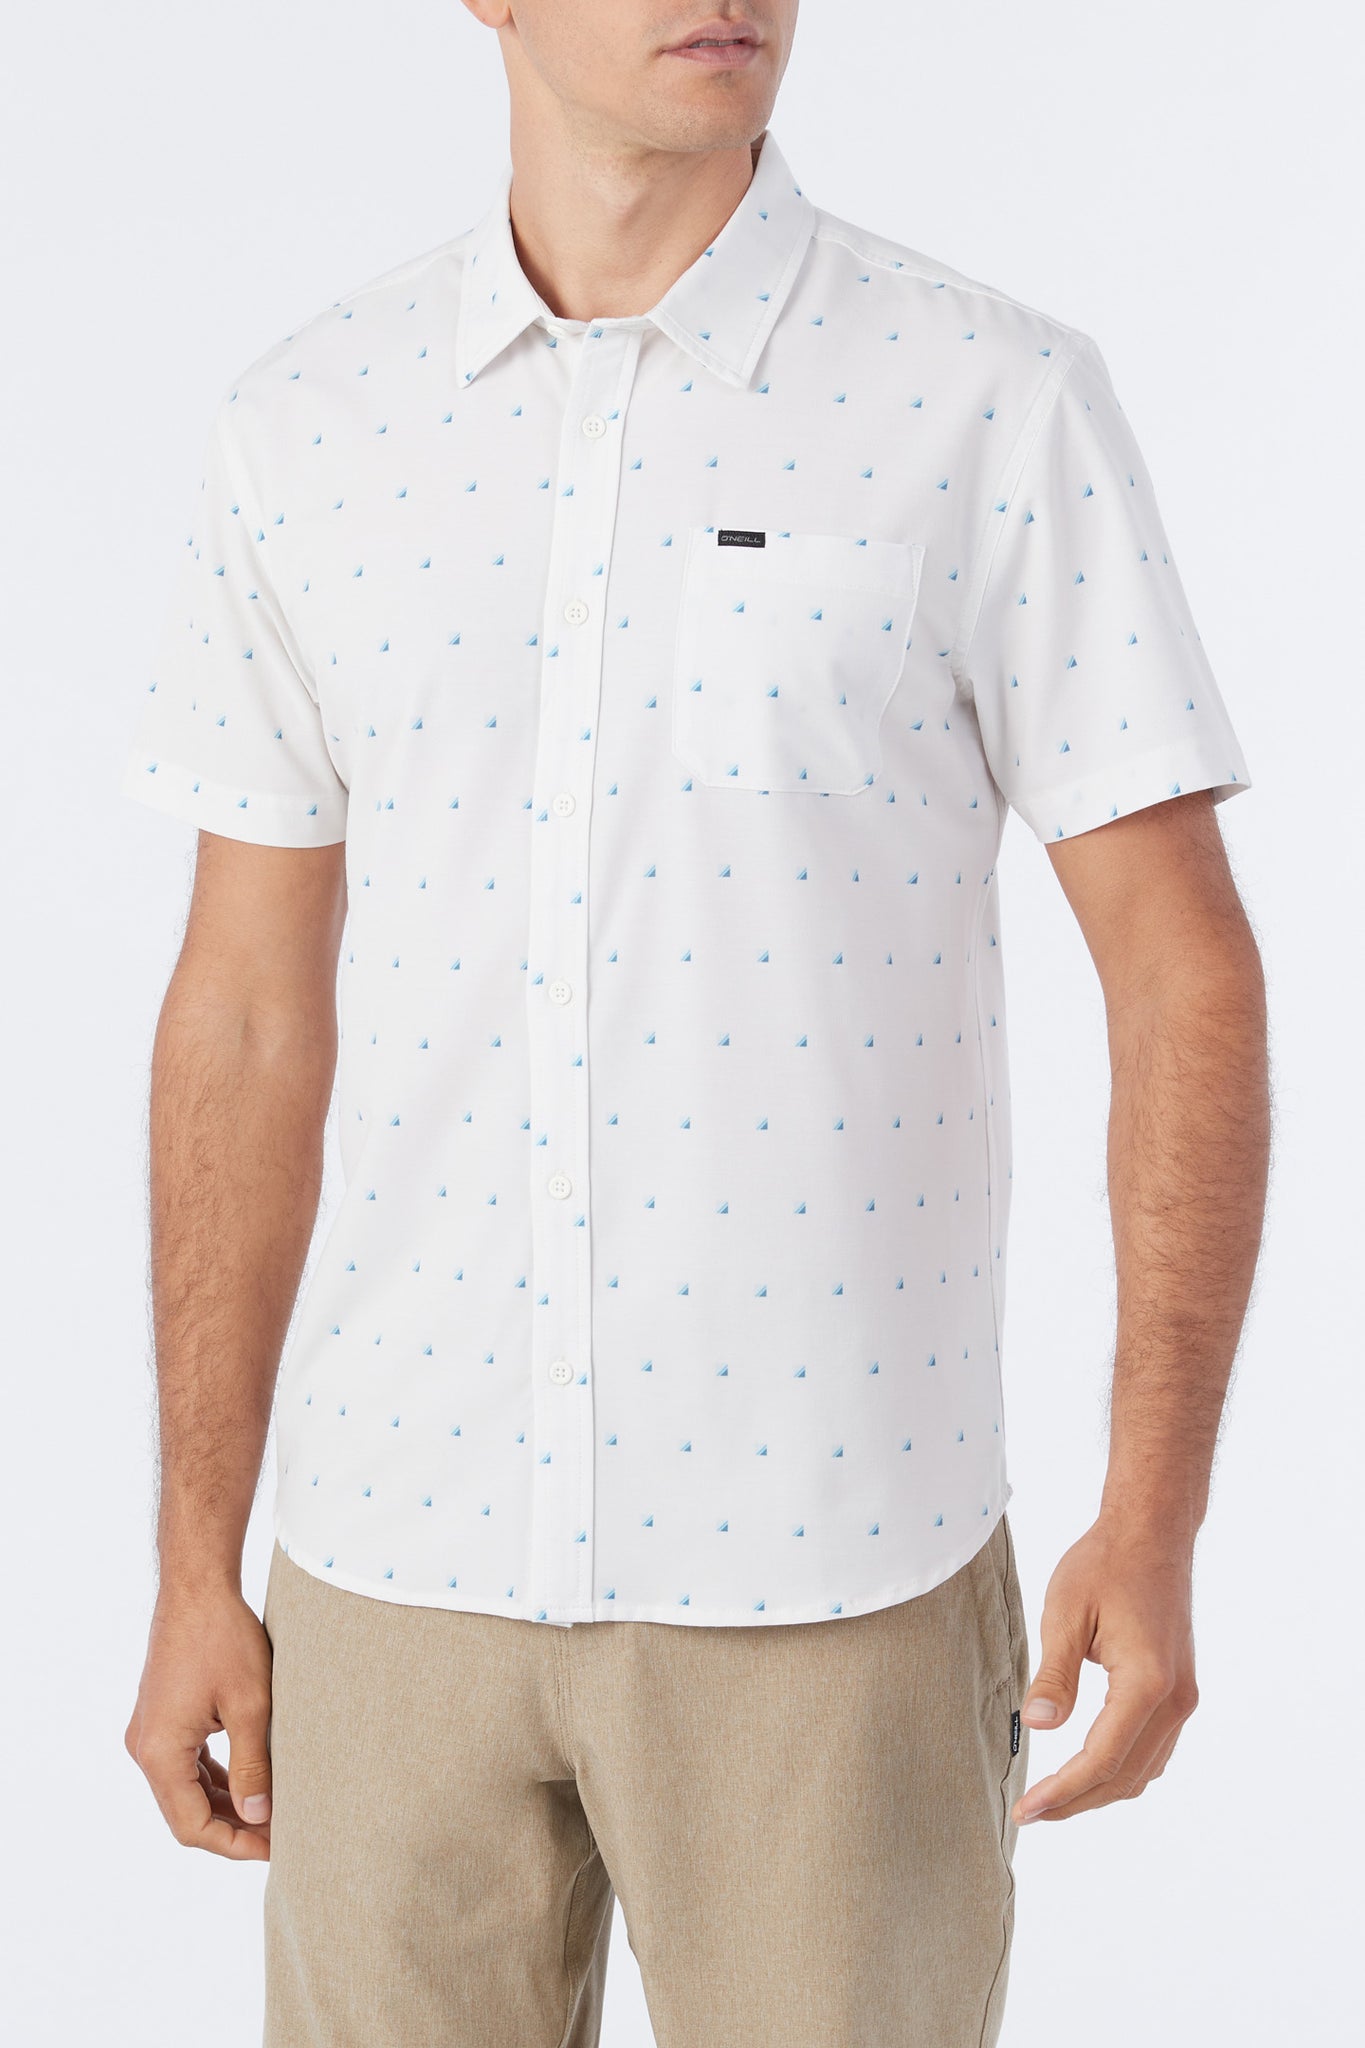 Camisas O'Neill USA Store - Trvlr Upf Traverse Standard Hombre Blancas